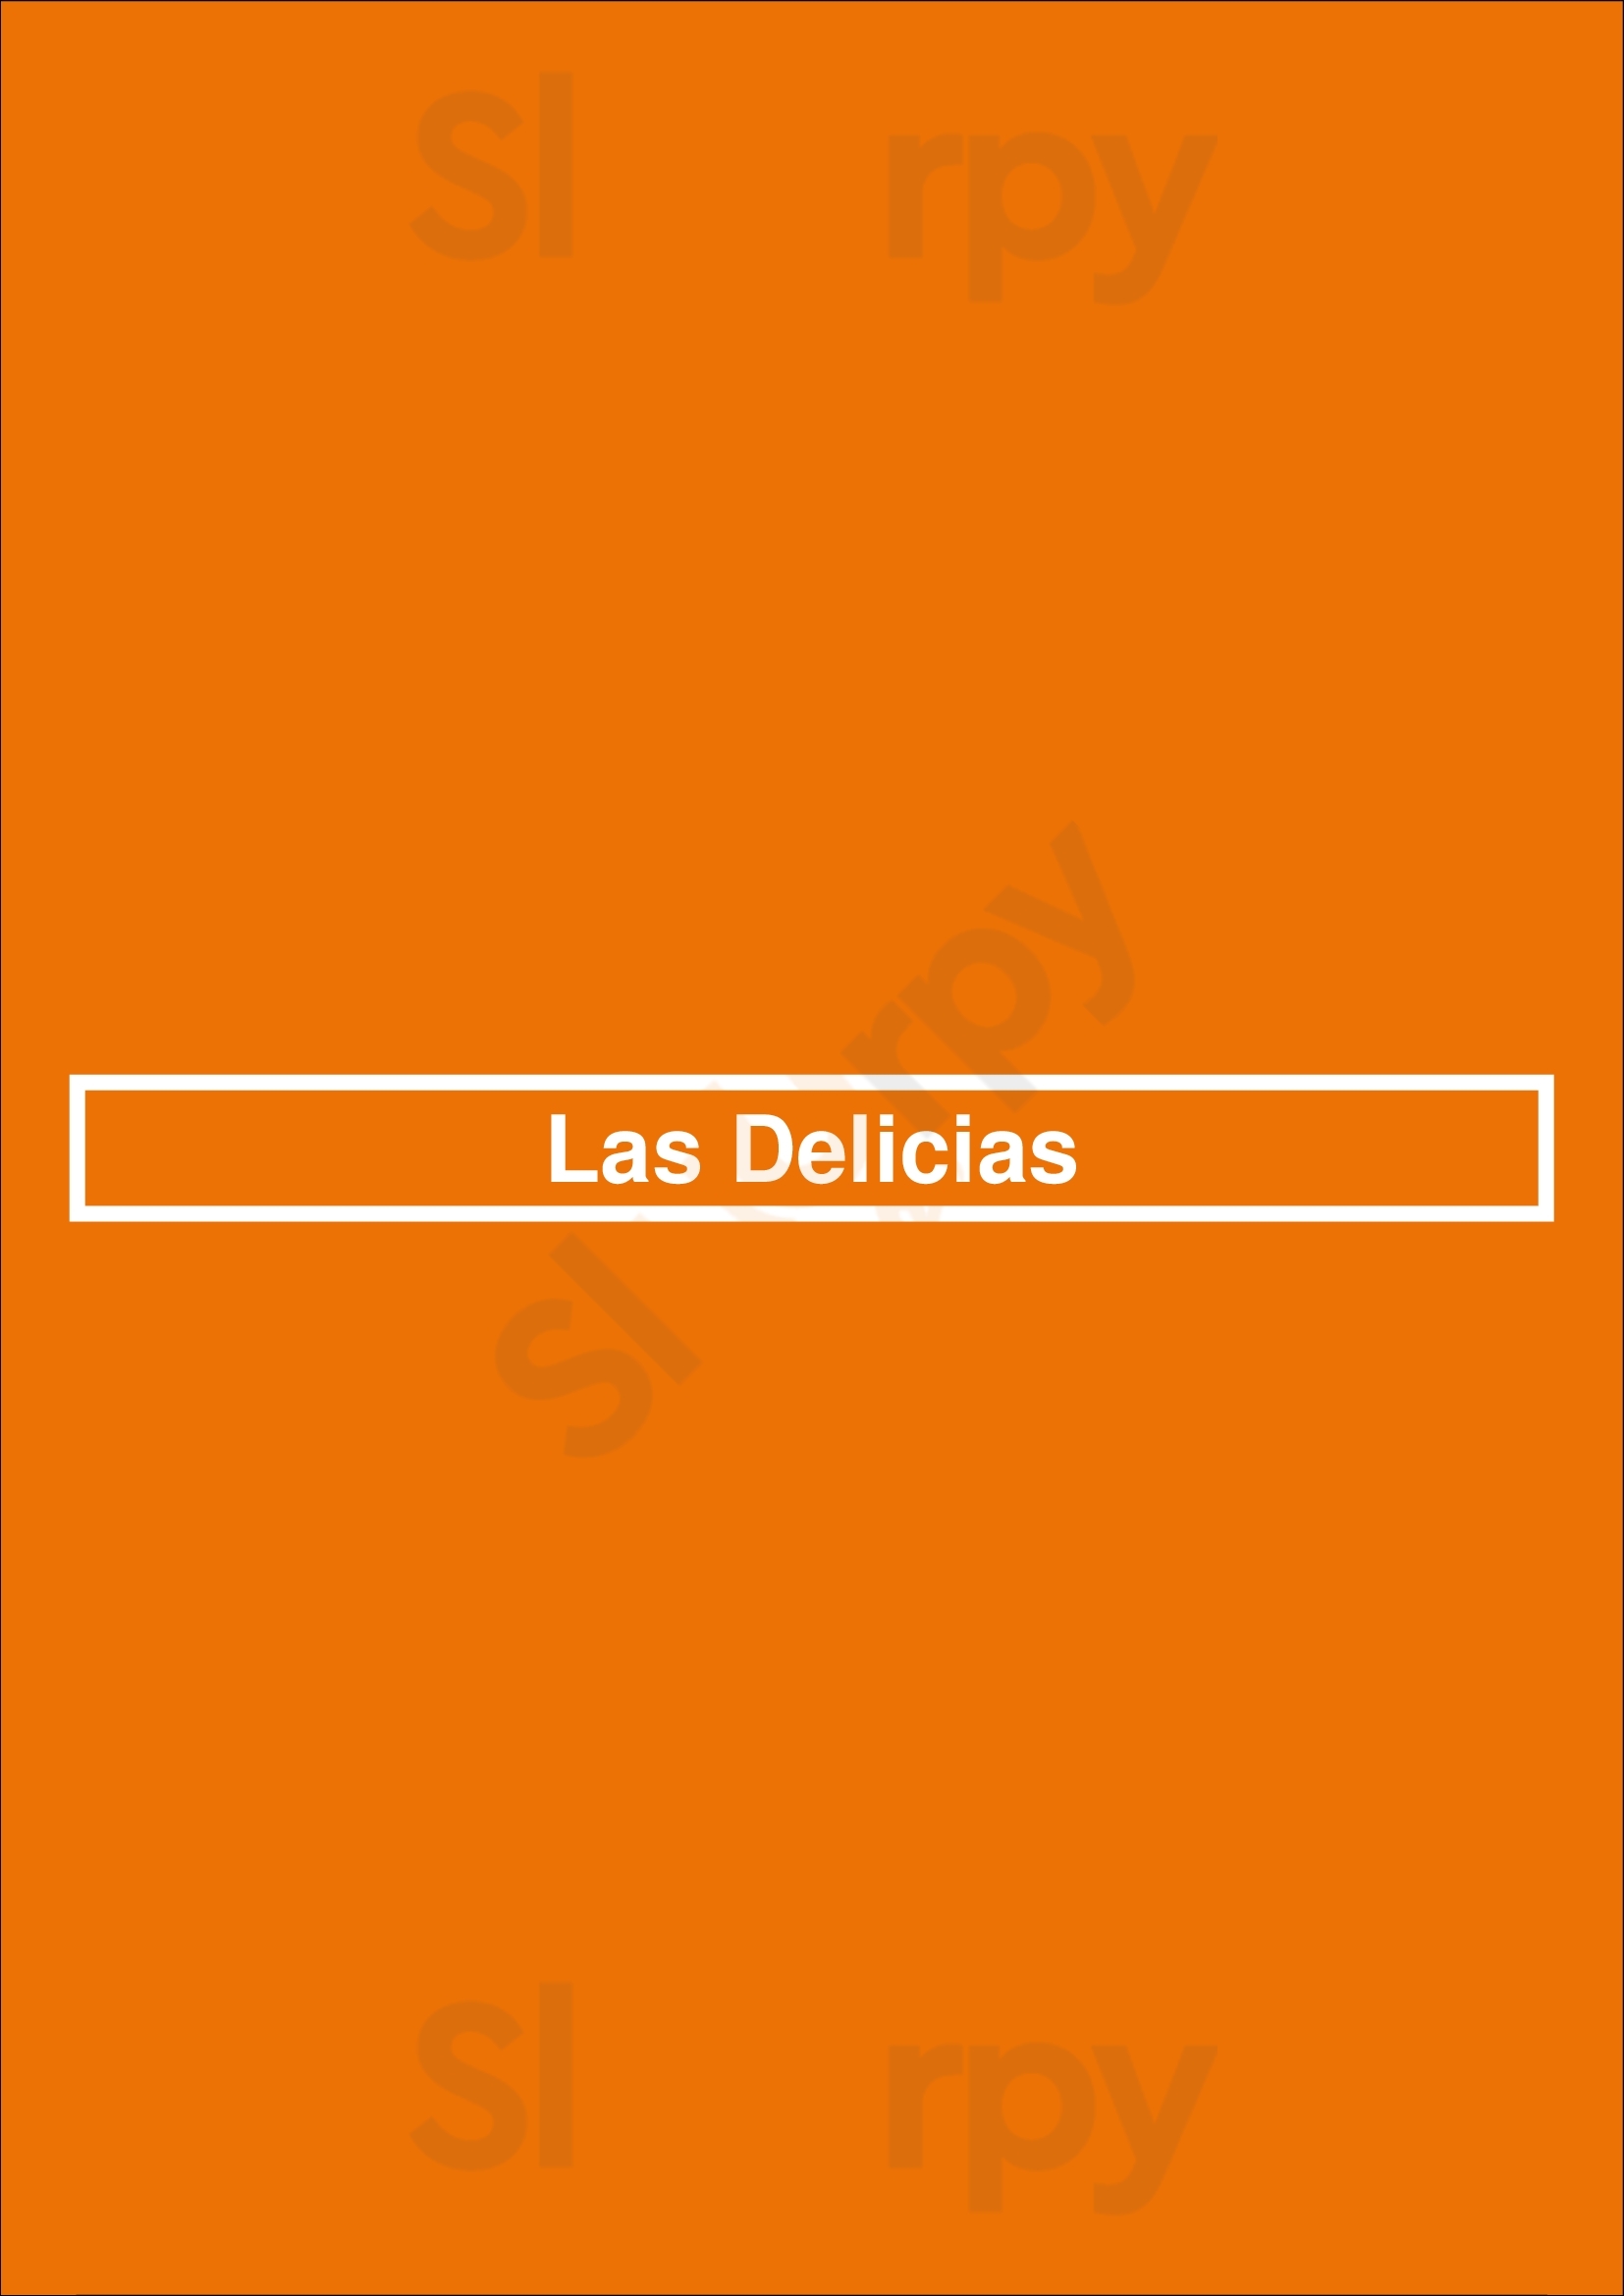 Las Delicias Pinto Menu - 1